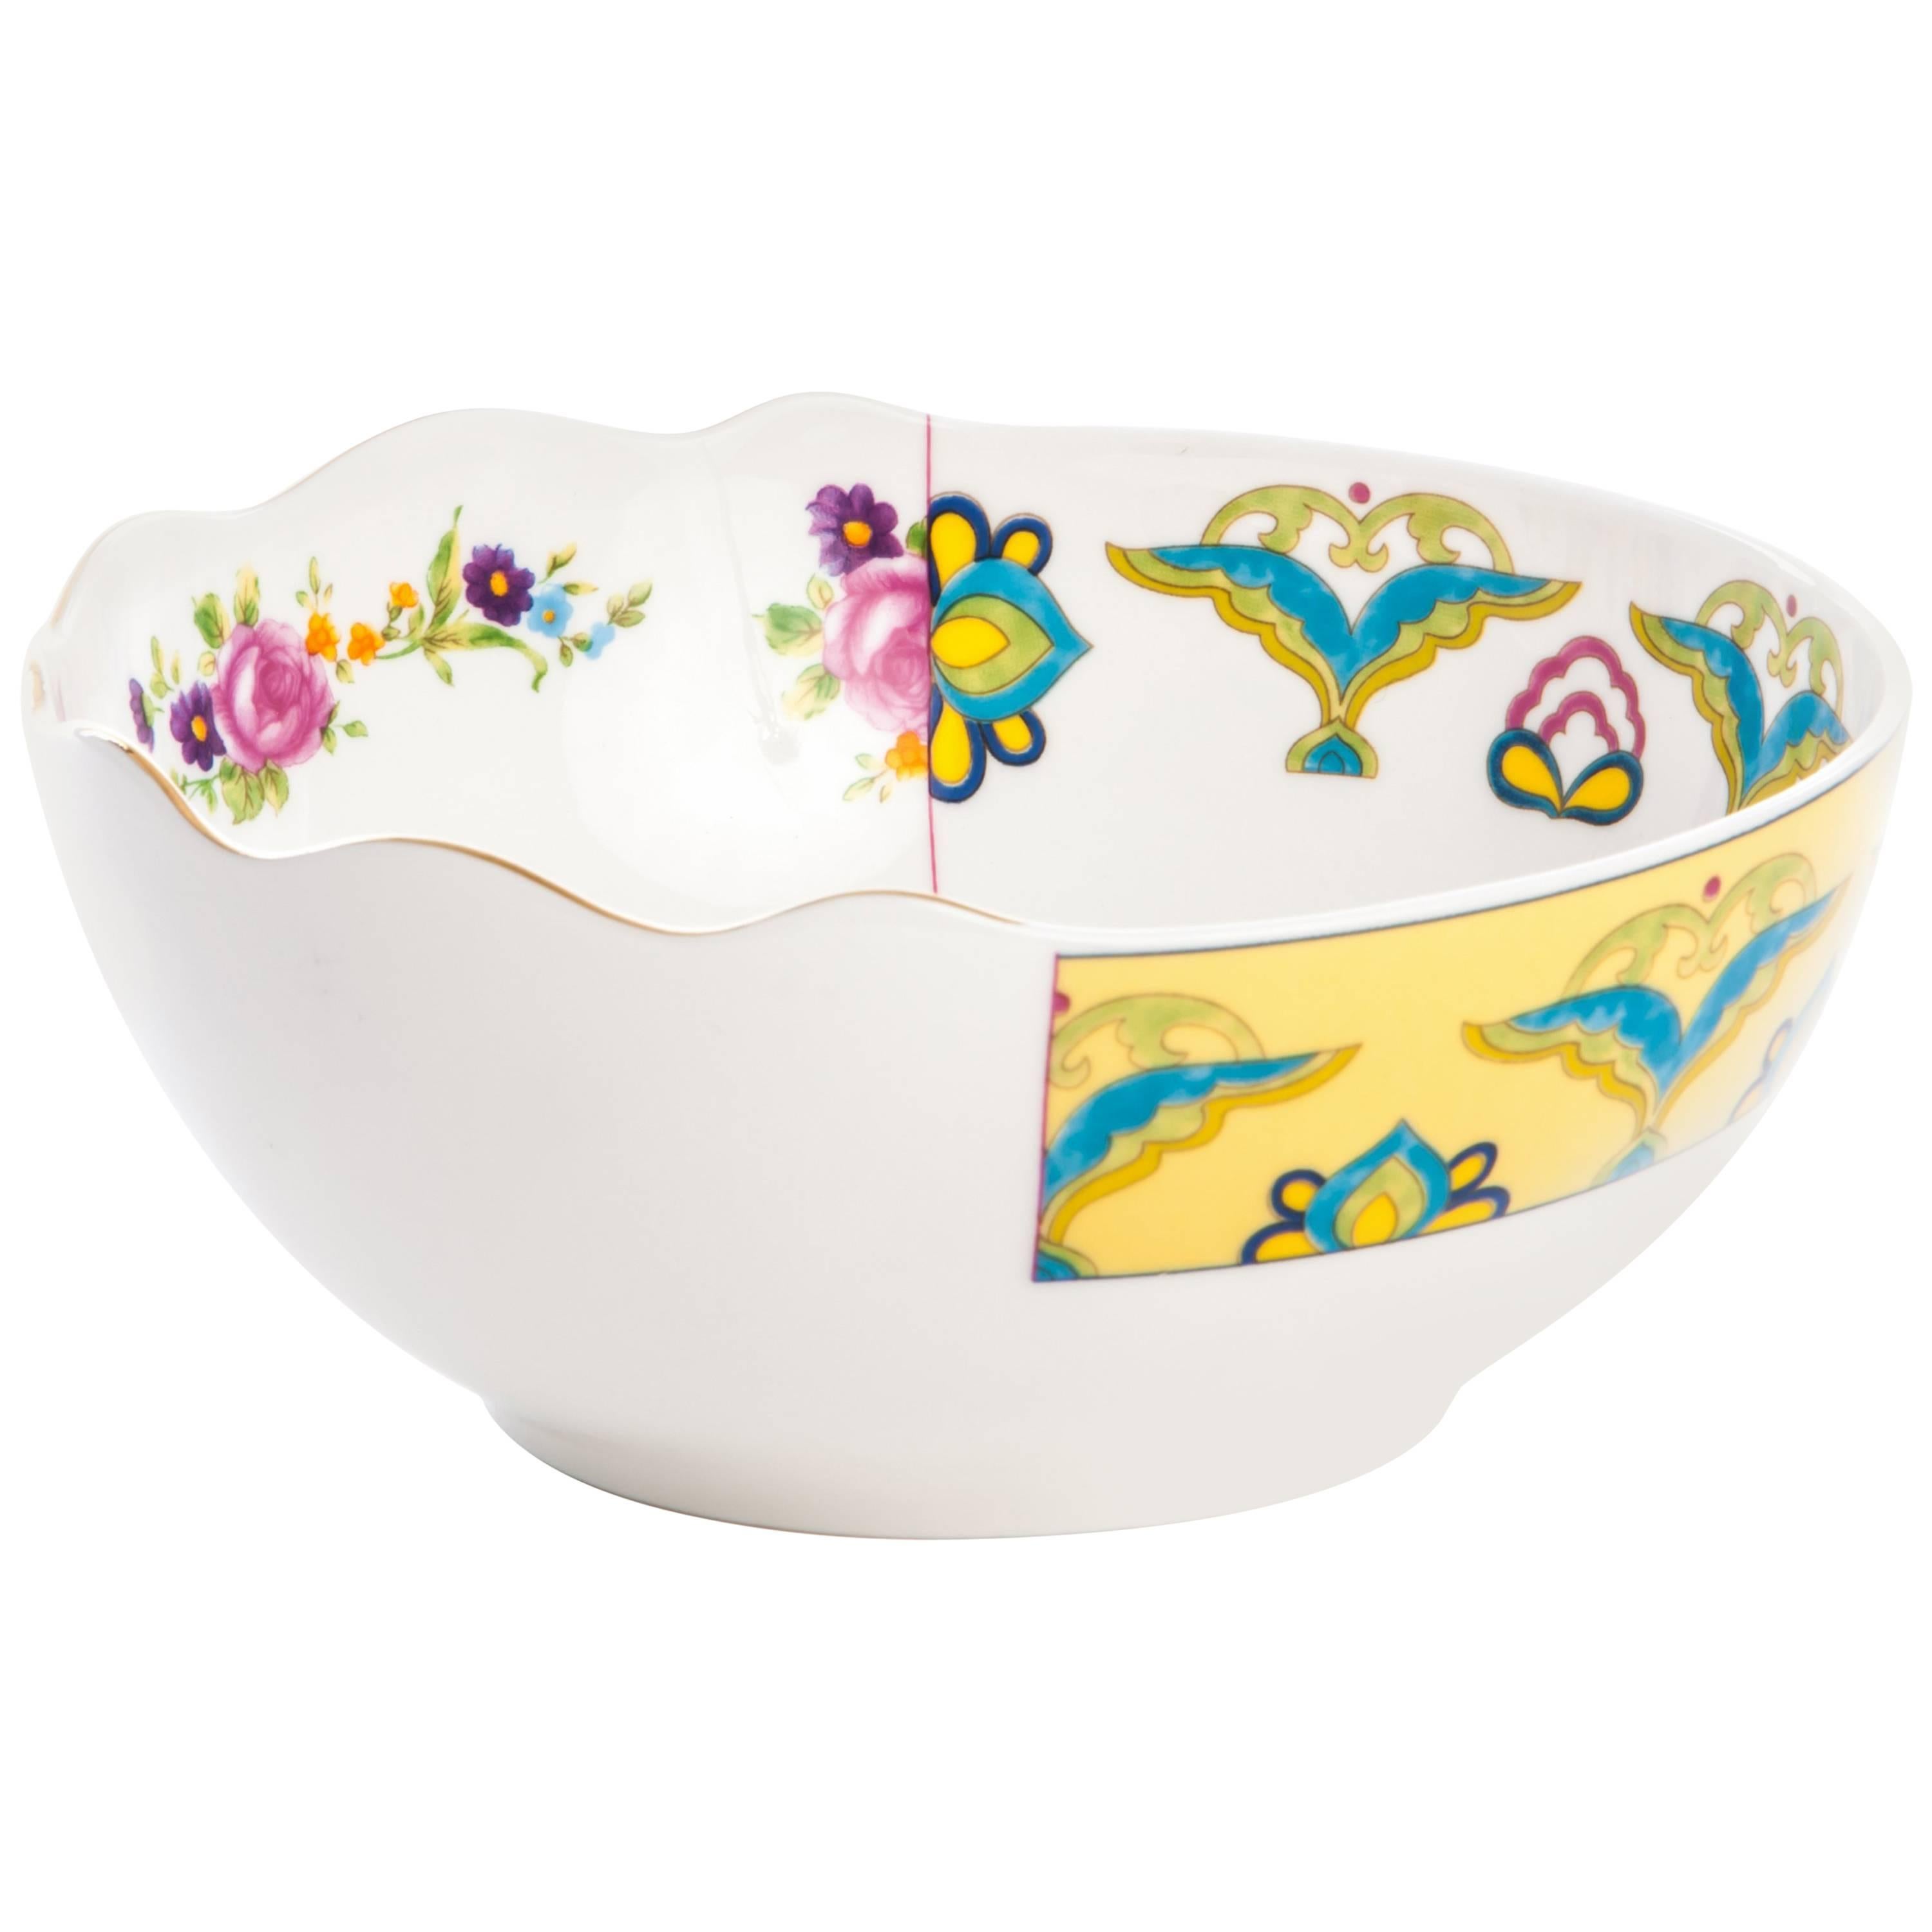 Seletti "Hybrid-Bauci" Bowl in Porcelain For Sale